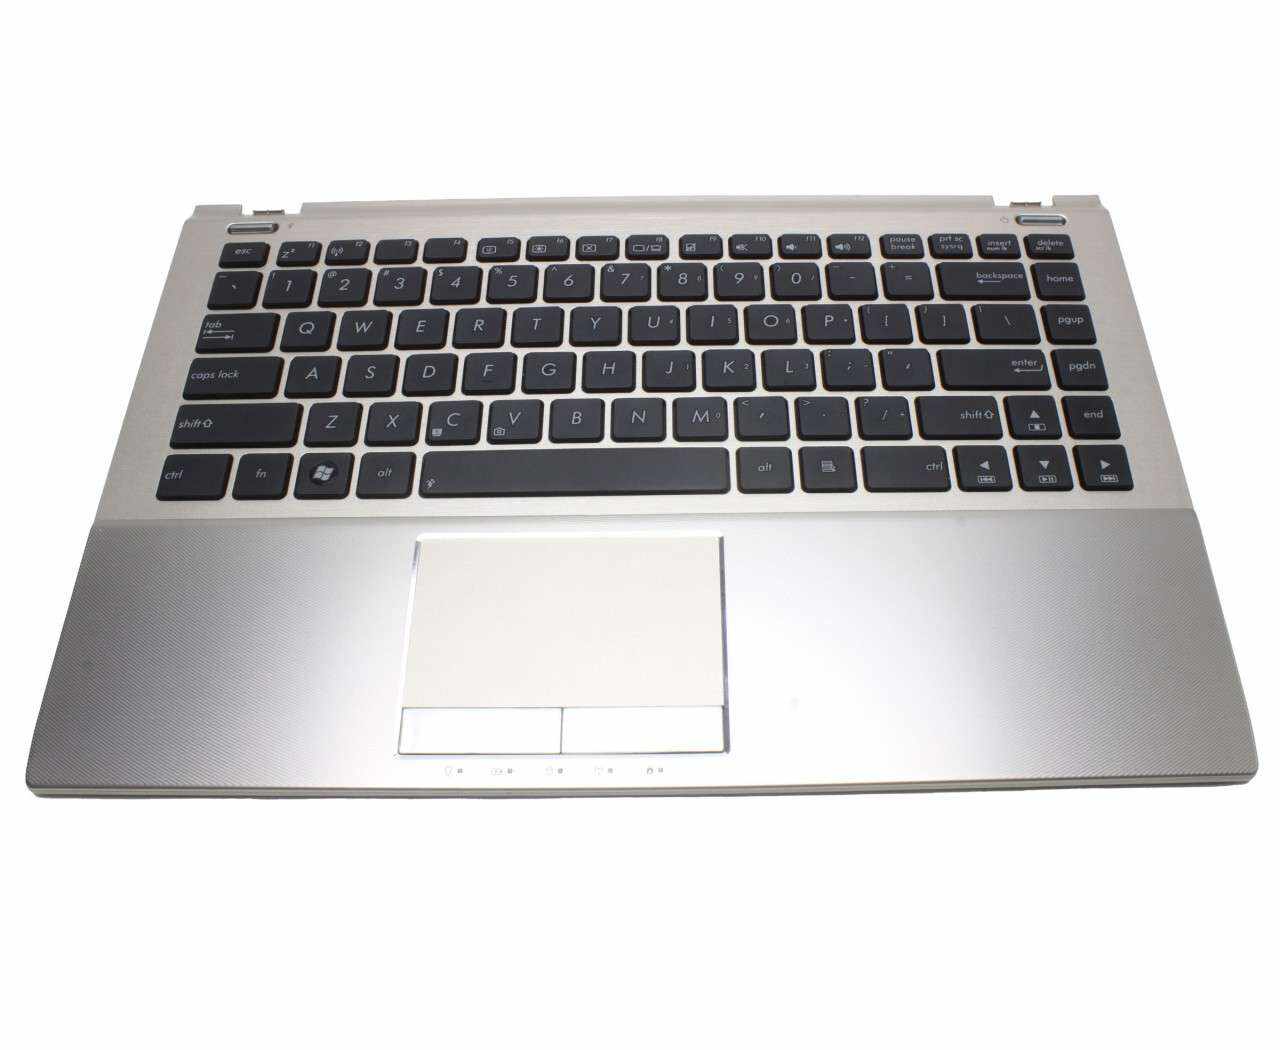 Tastatura Asus 13N0 LDA0111 neagra cu Palmrest argintiu